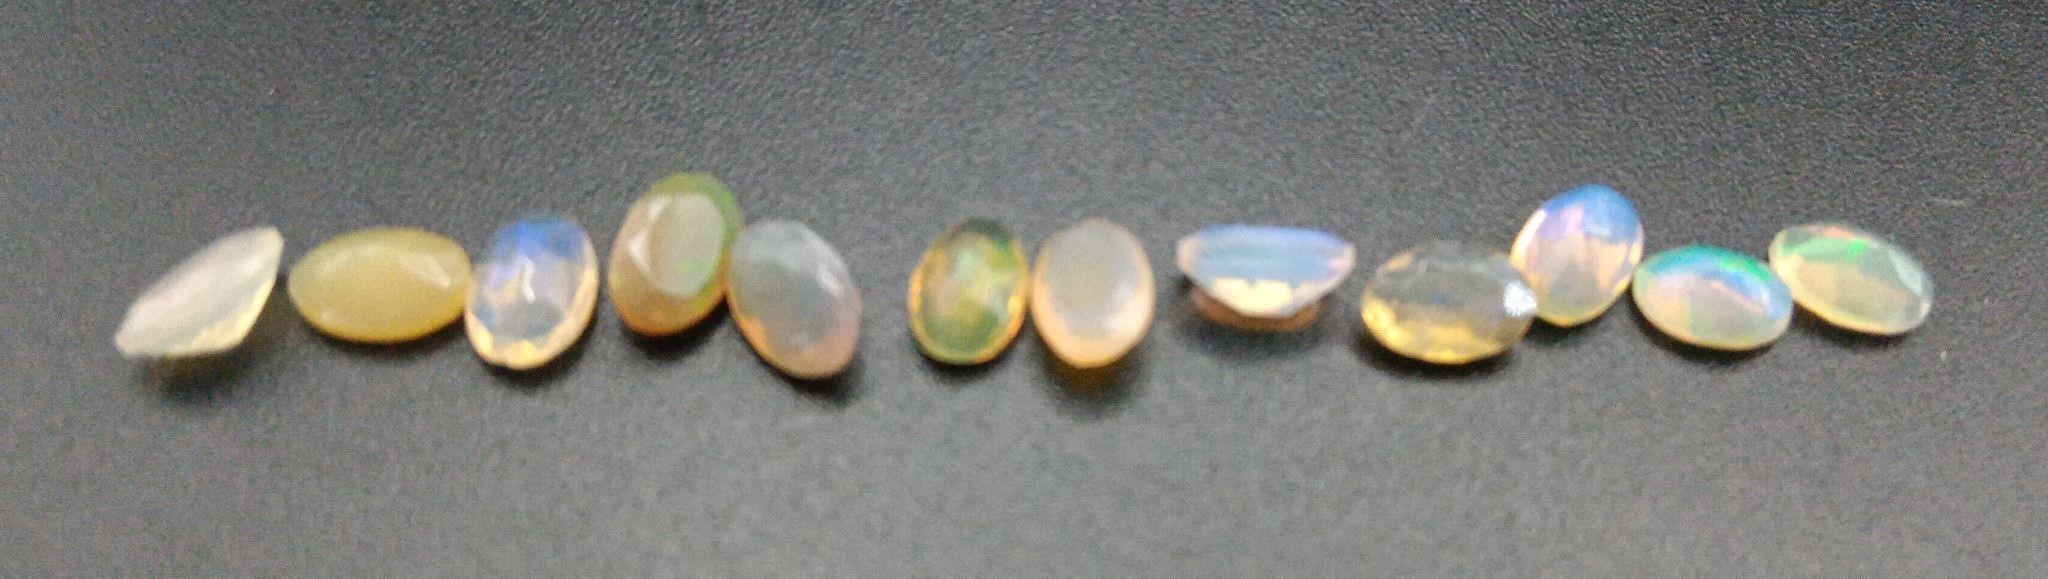 Australian Fire Opals (5mm x 3mm) (X12)